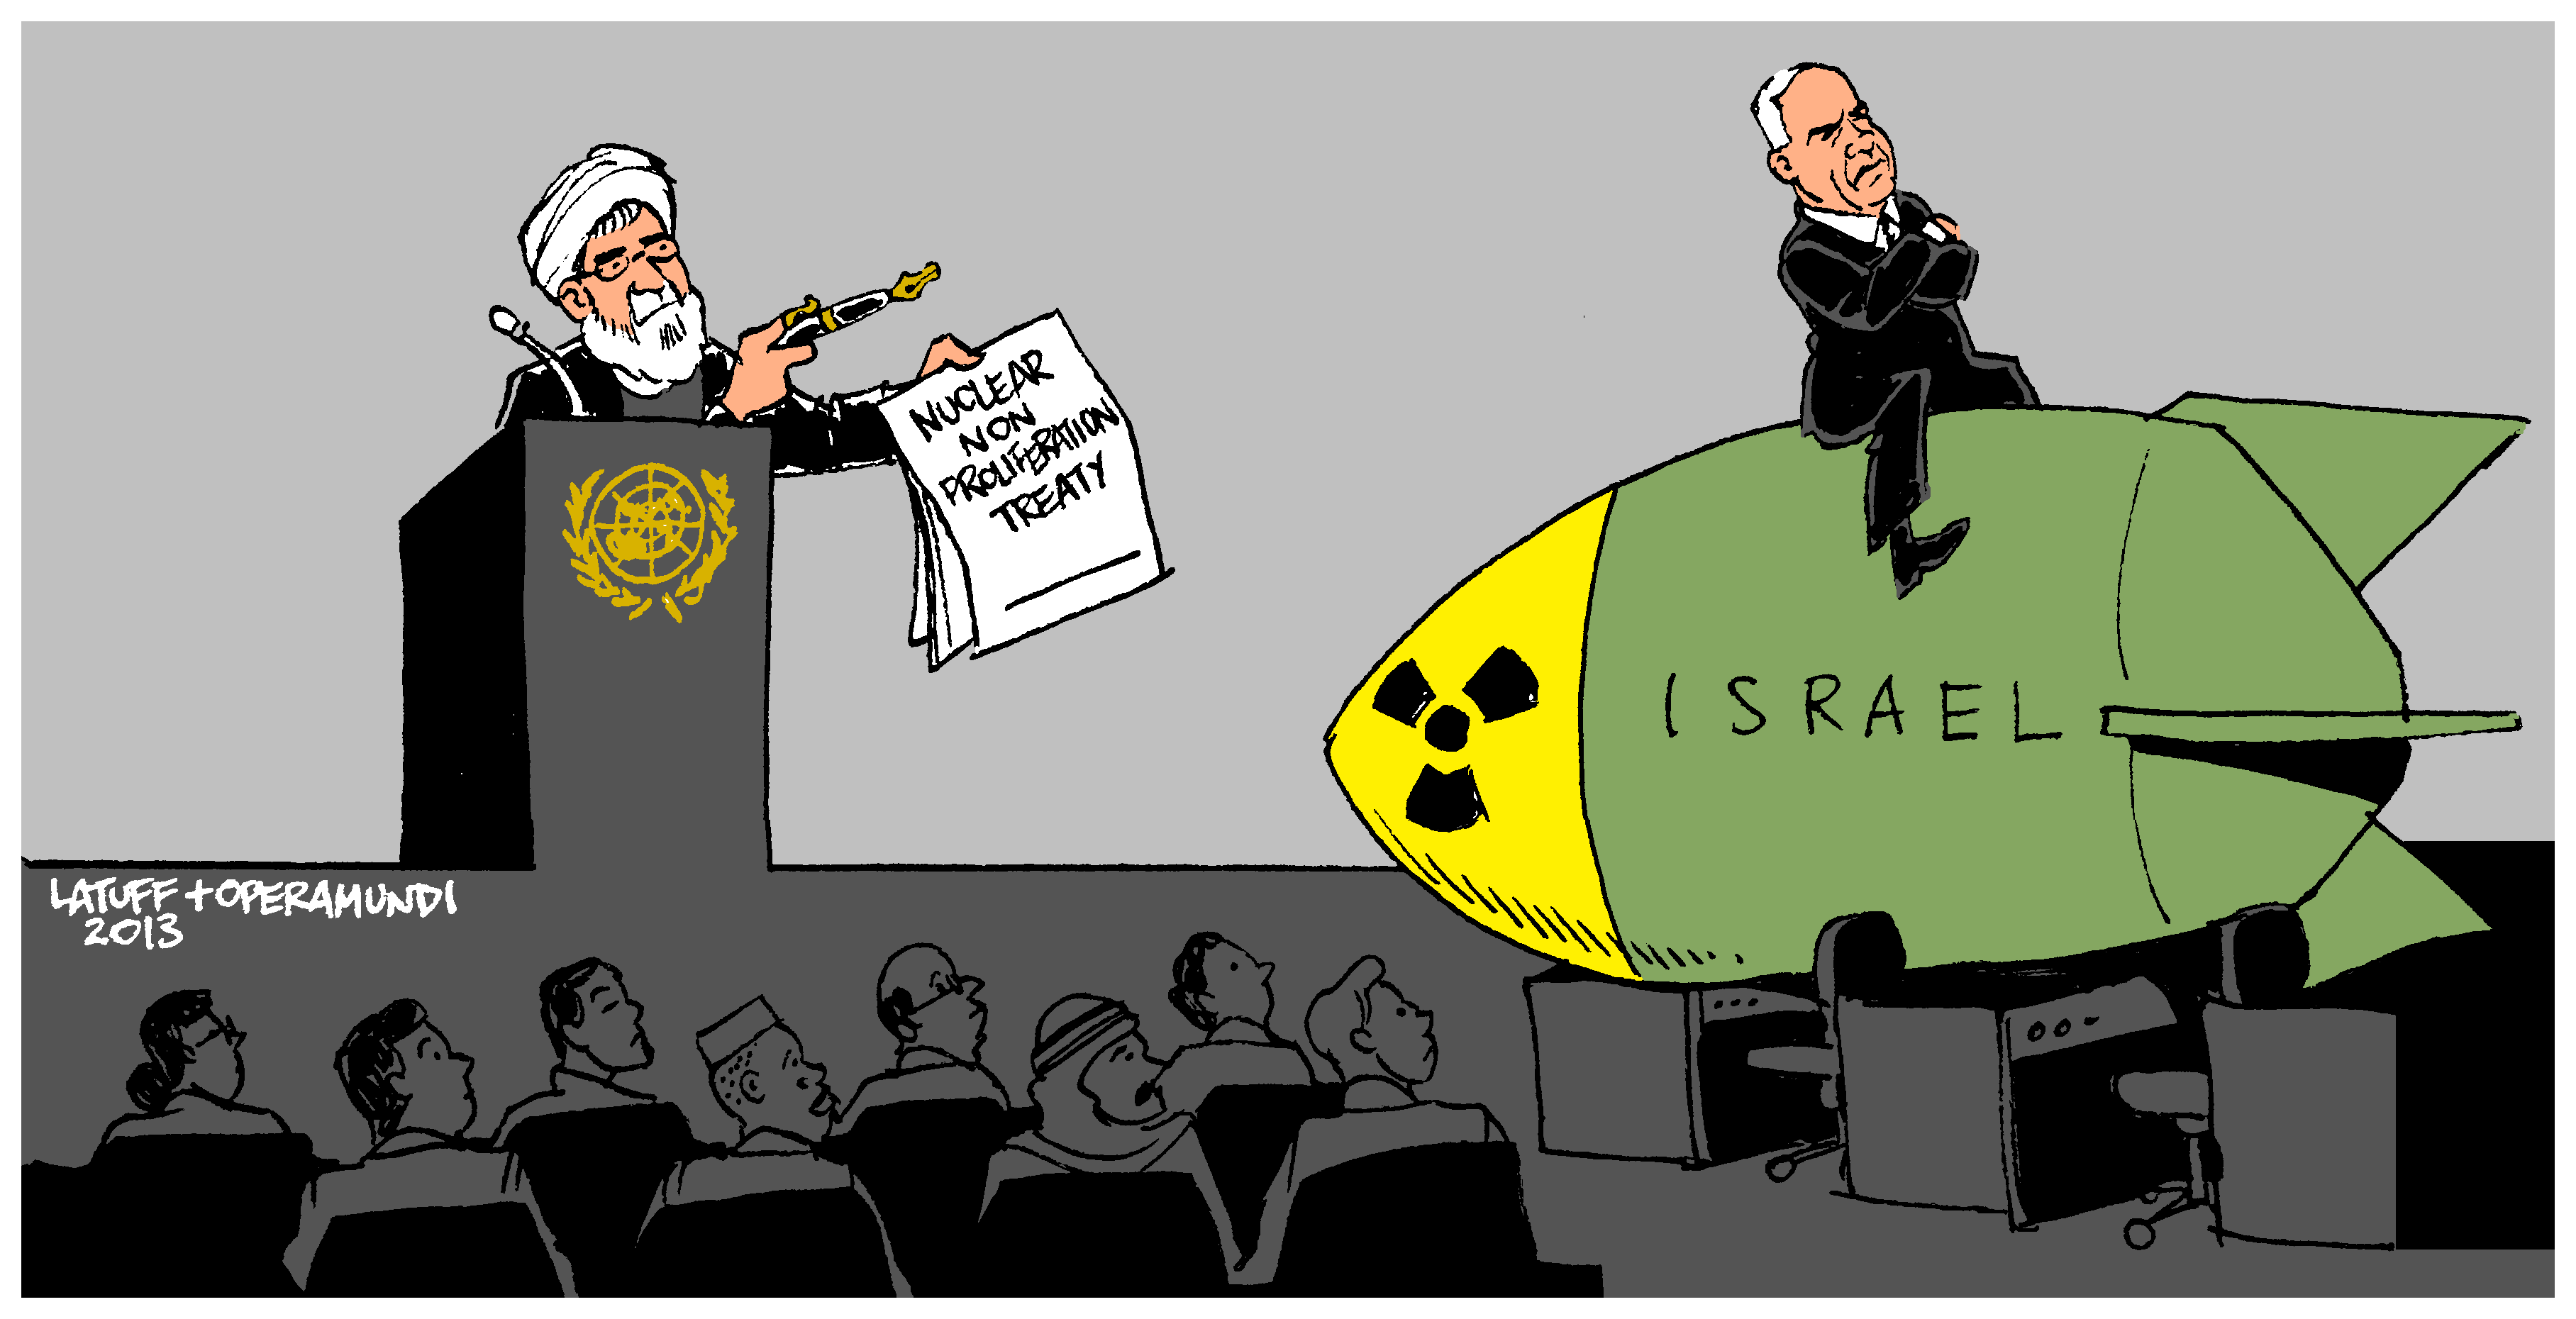 Trasportatore vero di armi nucleari (Caricatura)